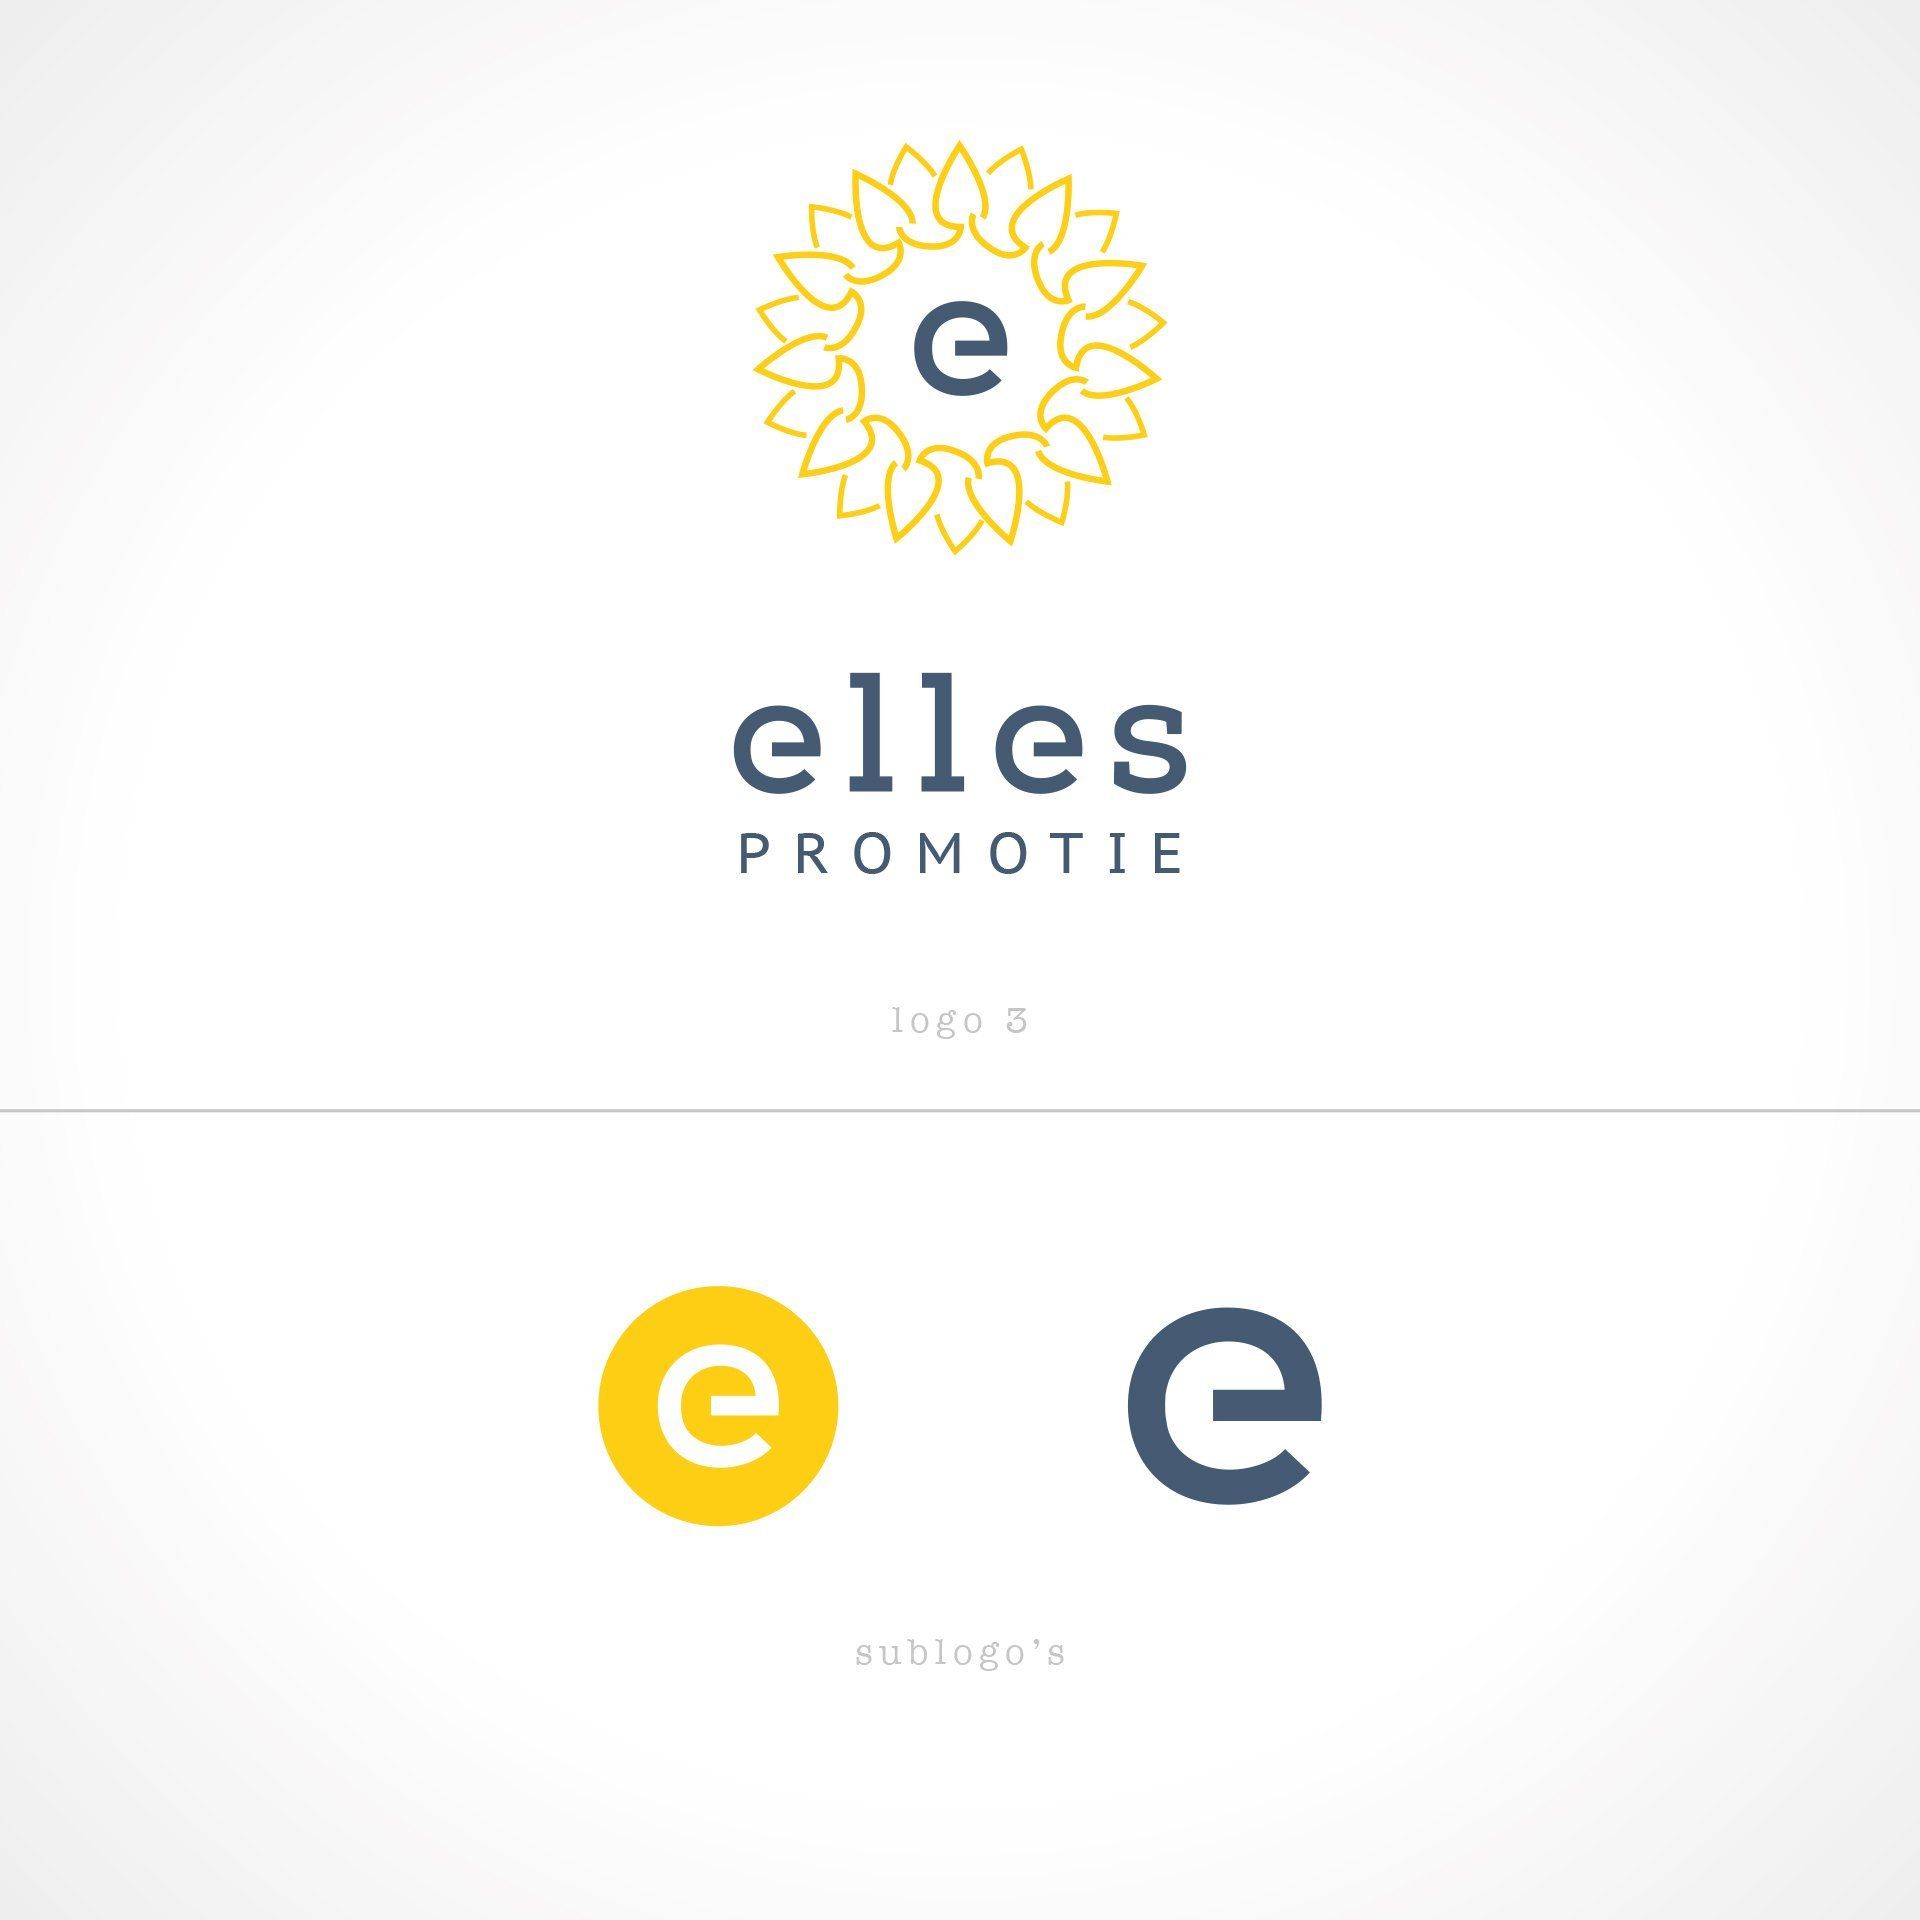 Logo Elles Promotie by Studio d'Or